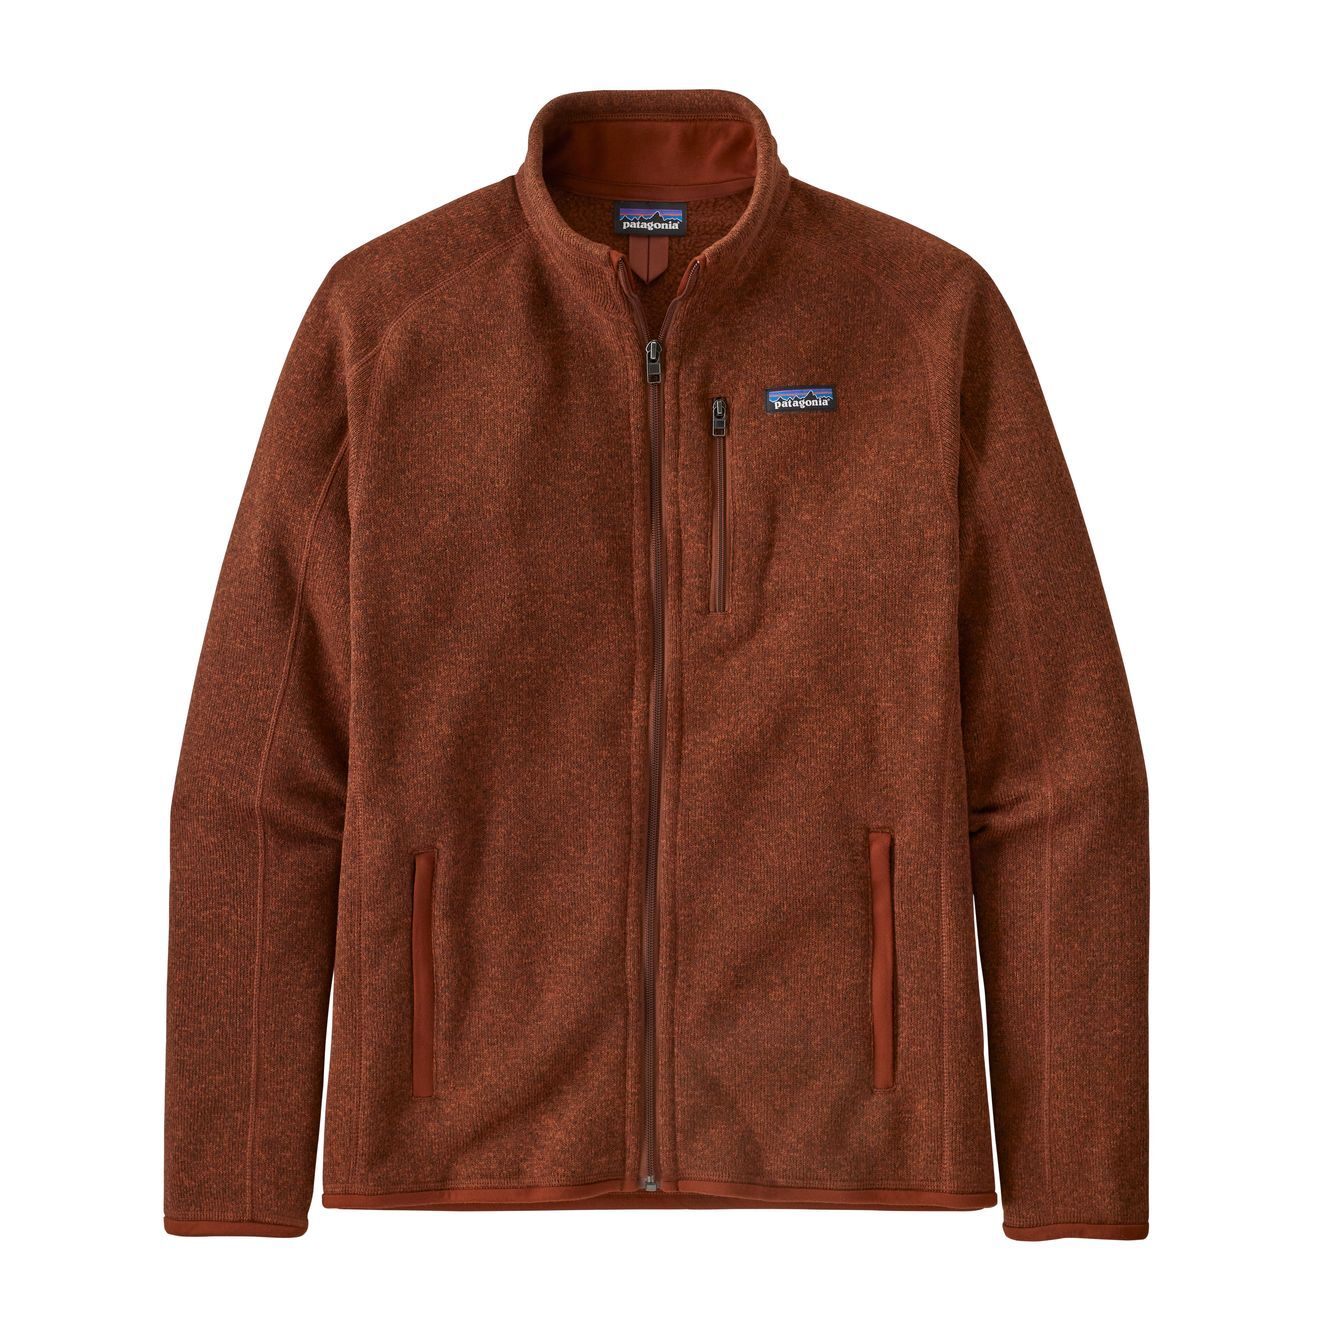 Patagonia Better Sweater Jkt - Fleece jacket - Men's